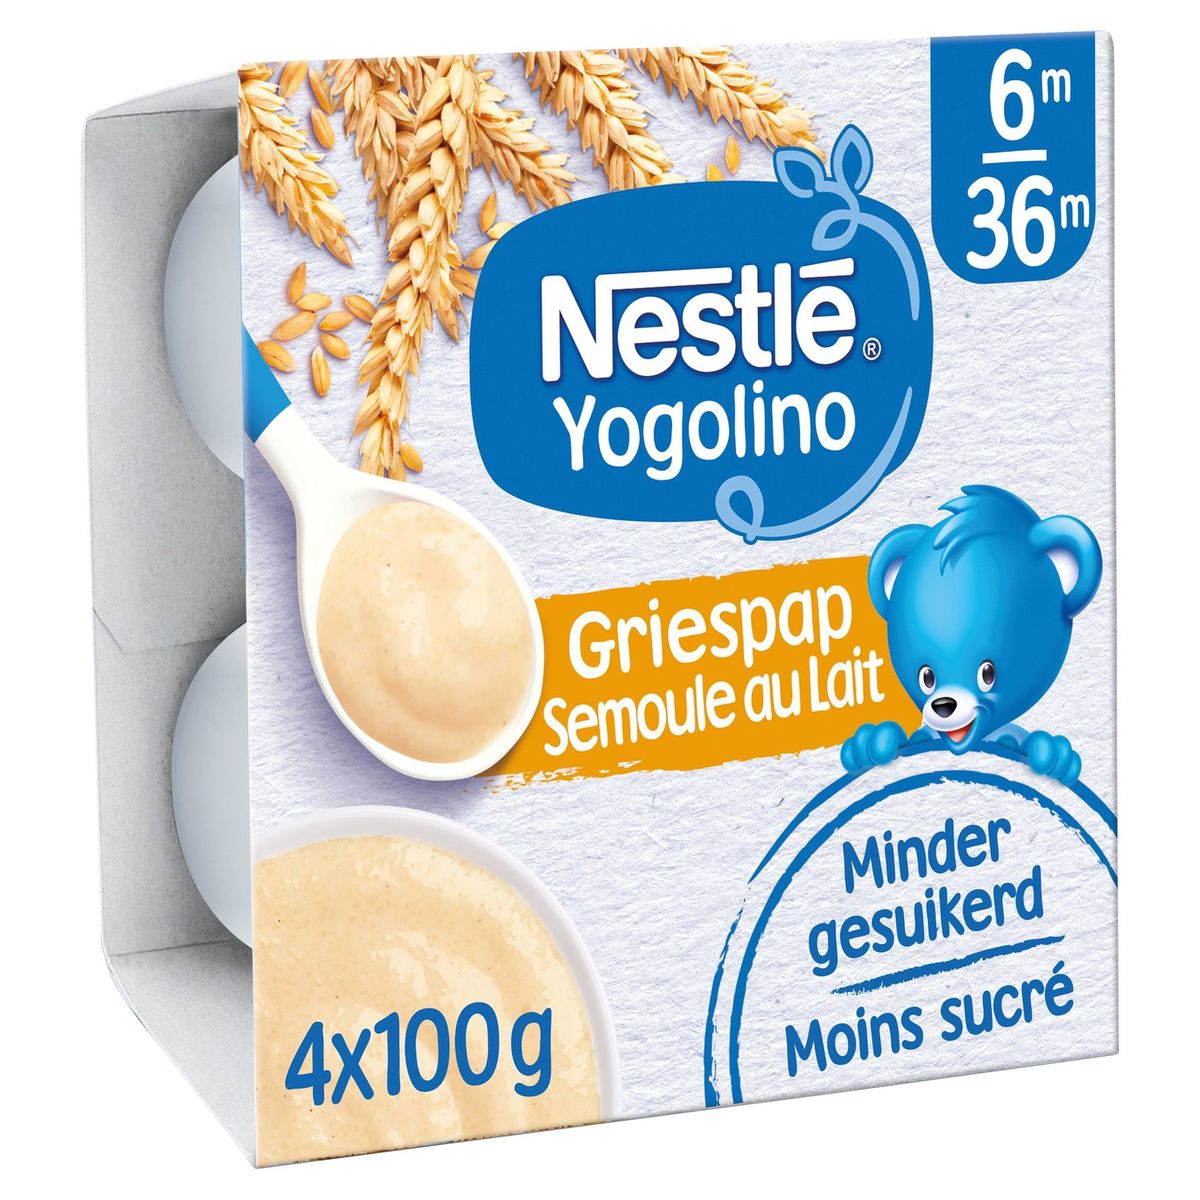 Nestlé Yogolino Semoule au Lait 6M - 36M 4 x 100 g